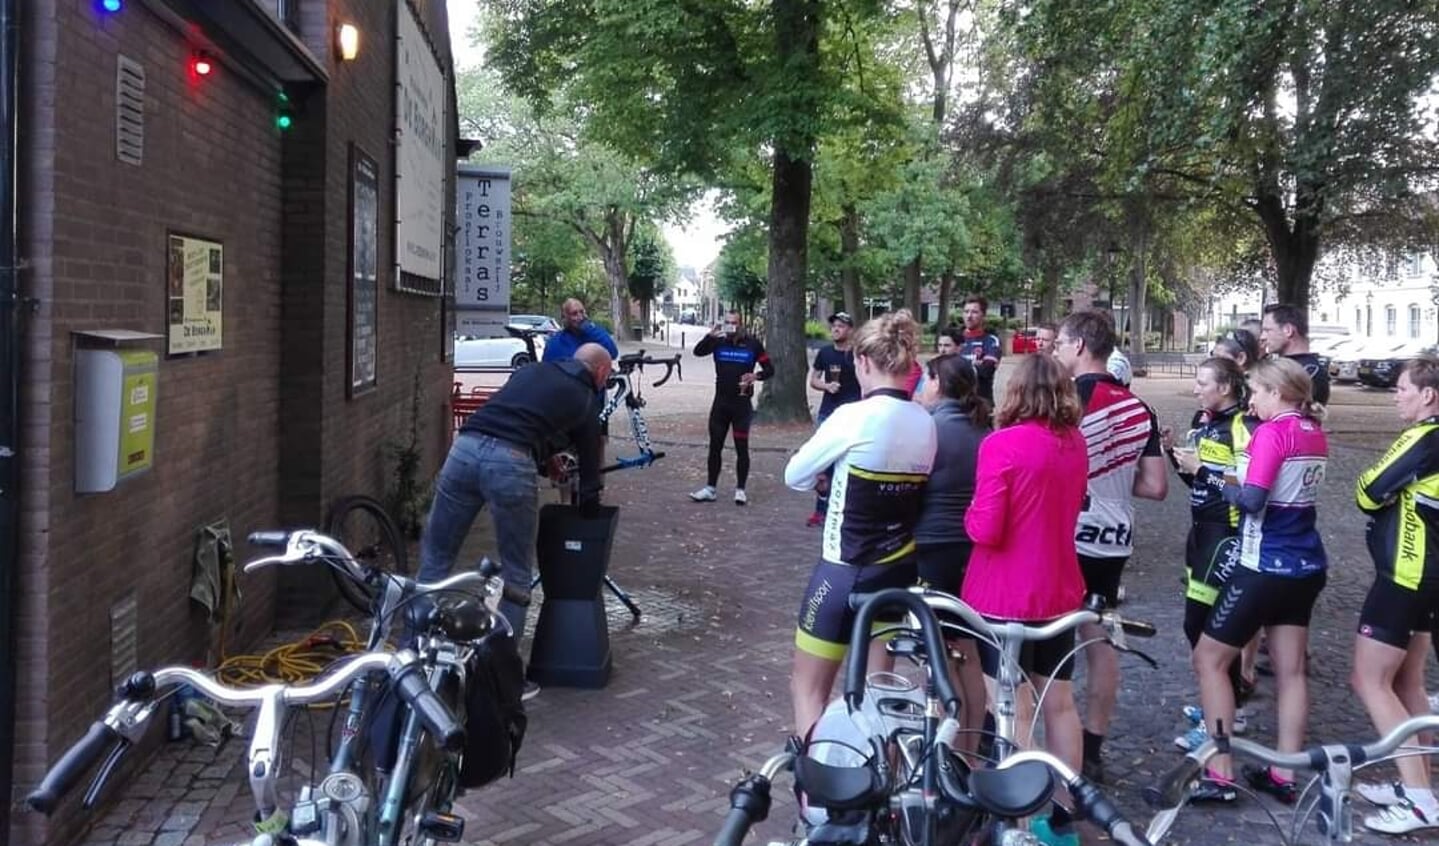 Sportclinics in Bredevoort als voorbereiding op evenementen. Foto: PR